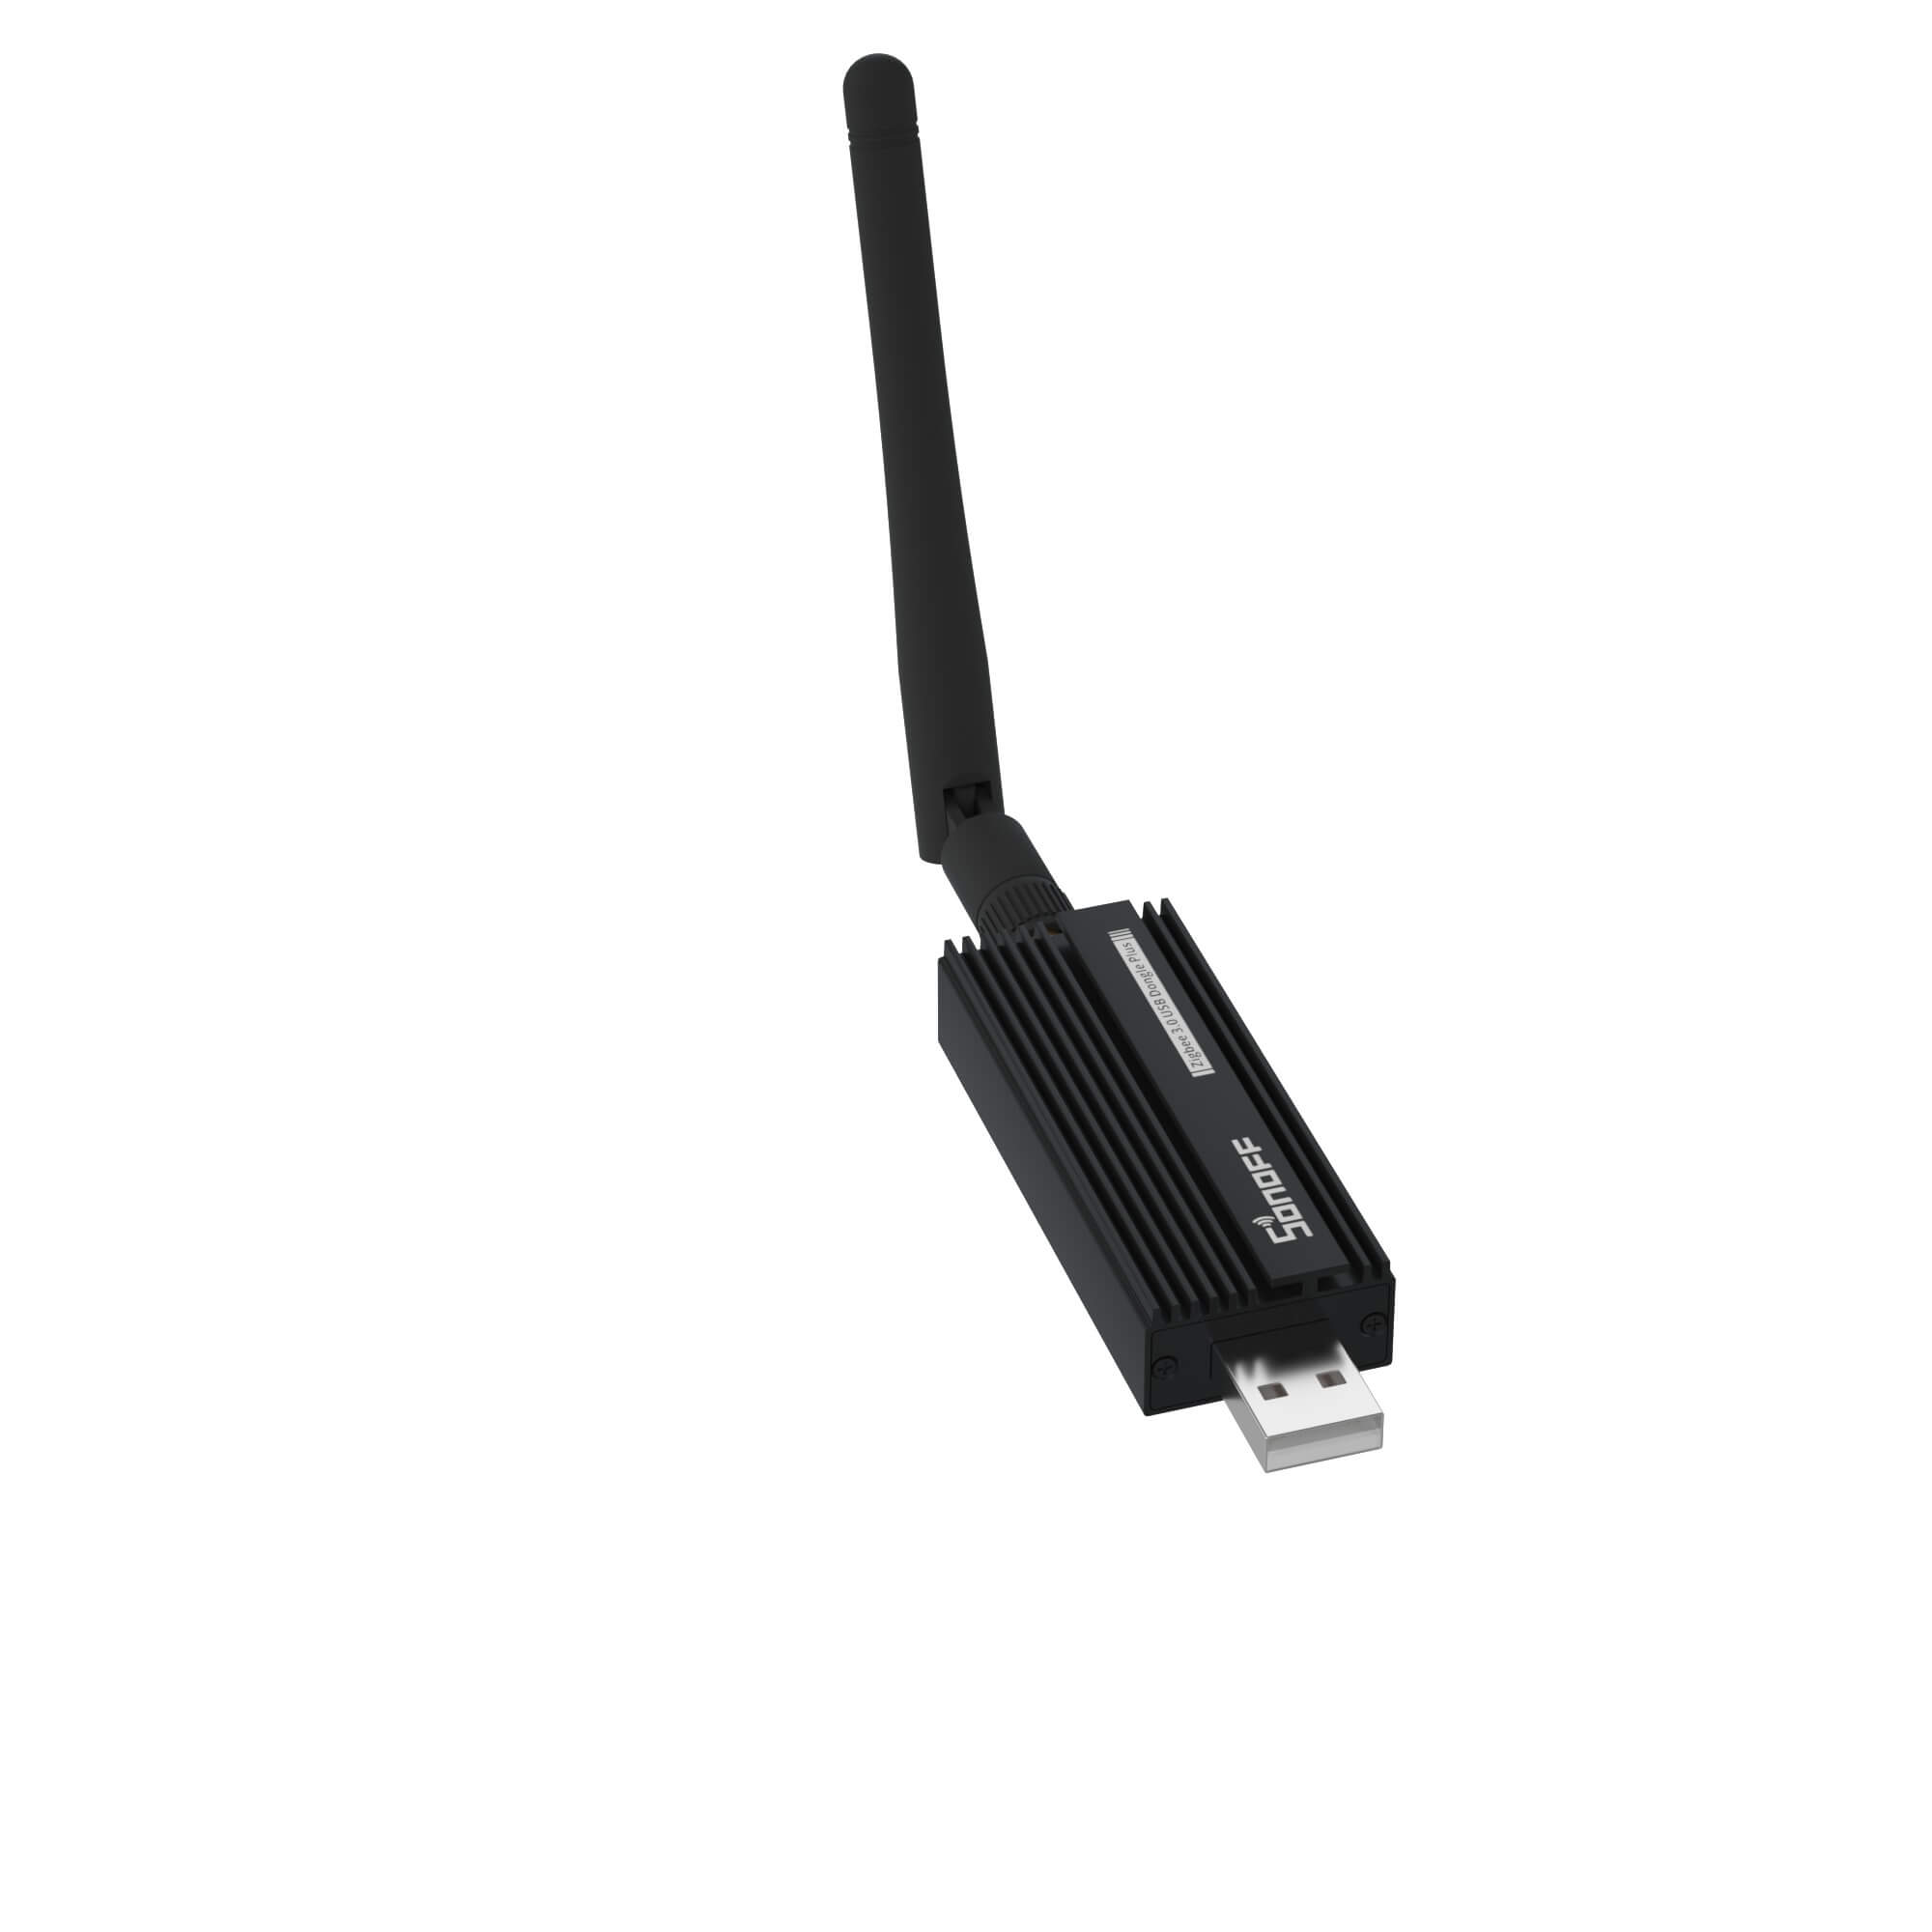 SONOFF Zigbee 3.0 USB Dongle Plus Universal Zigbee Gateway USB